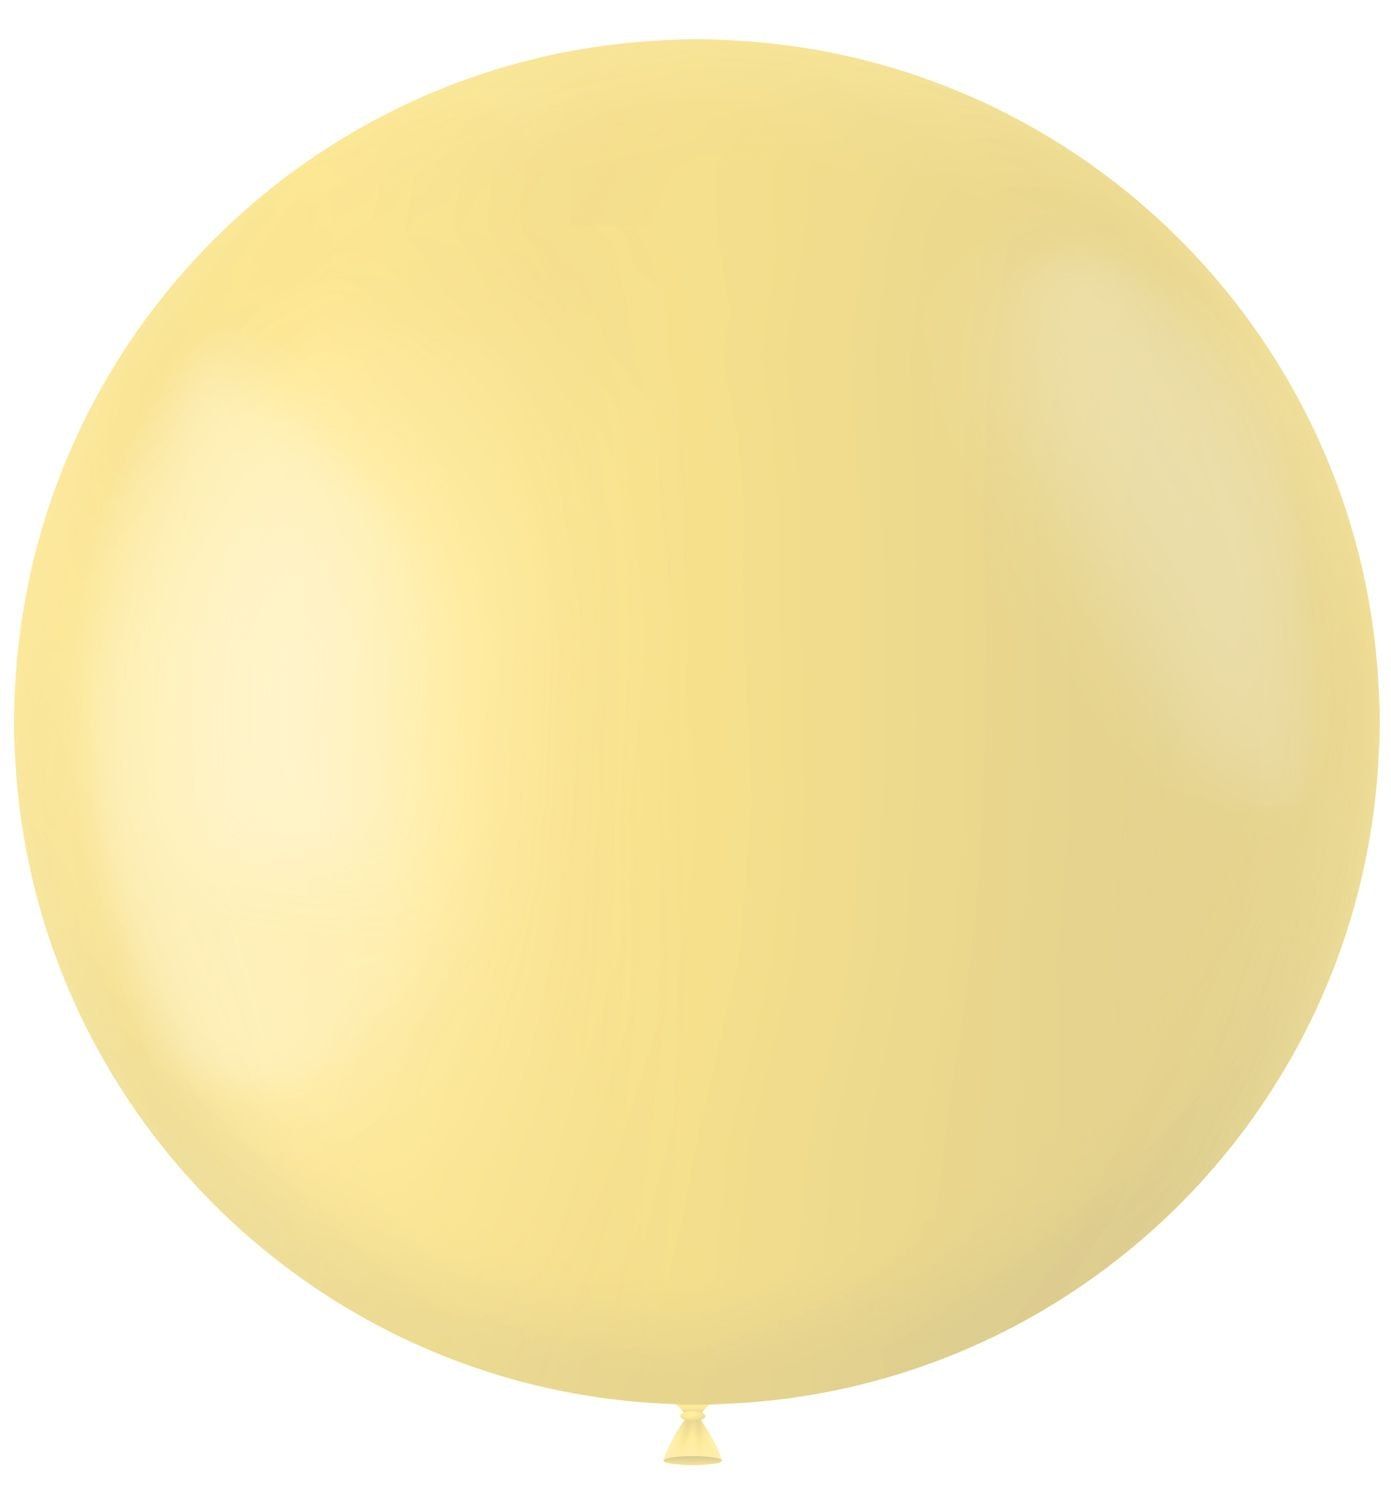 Gele ballon matte kleur